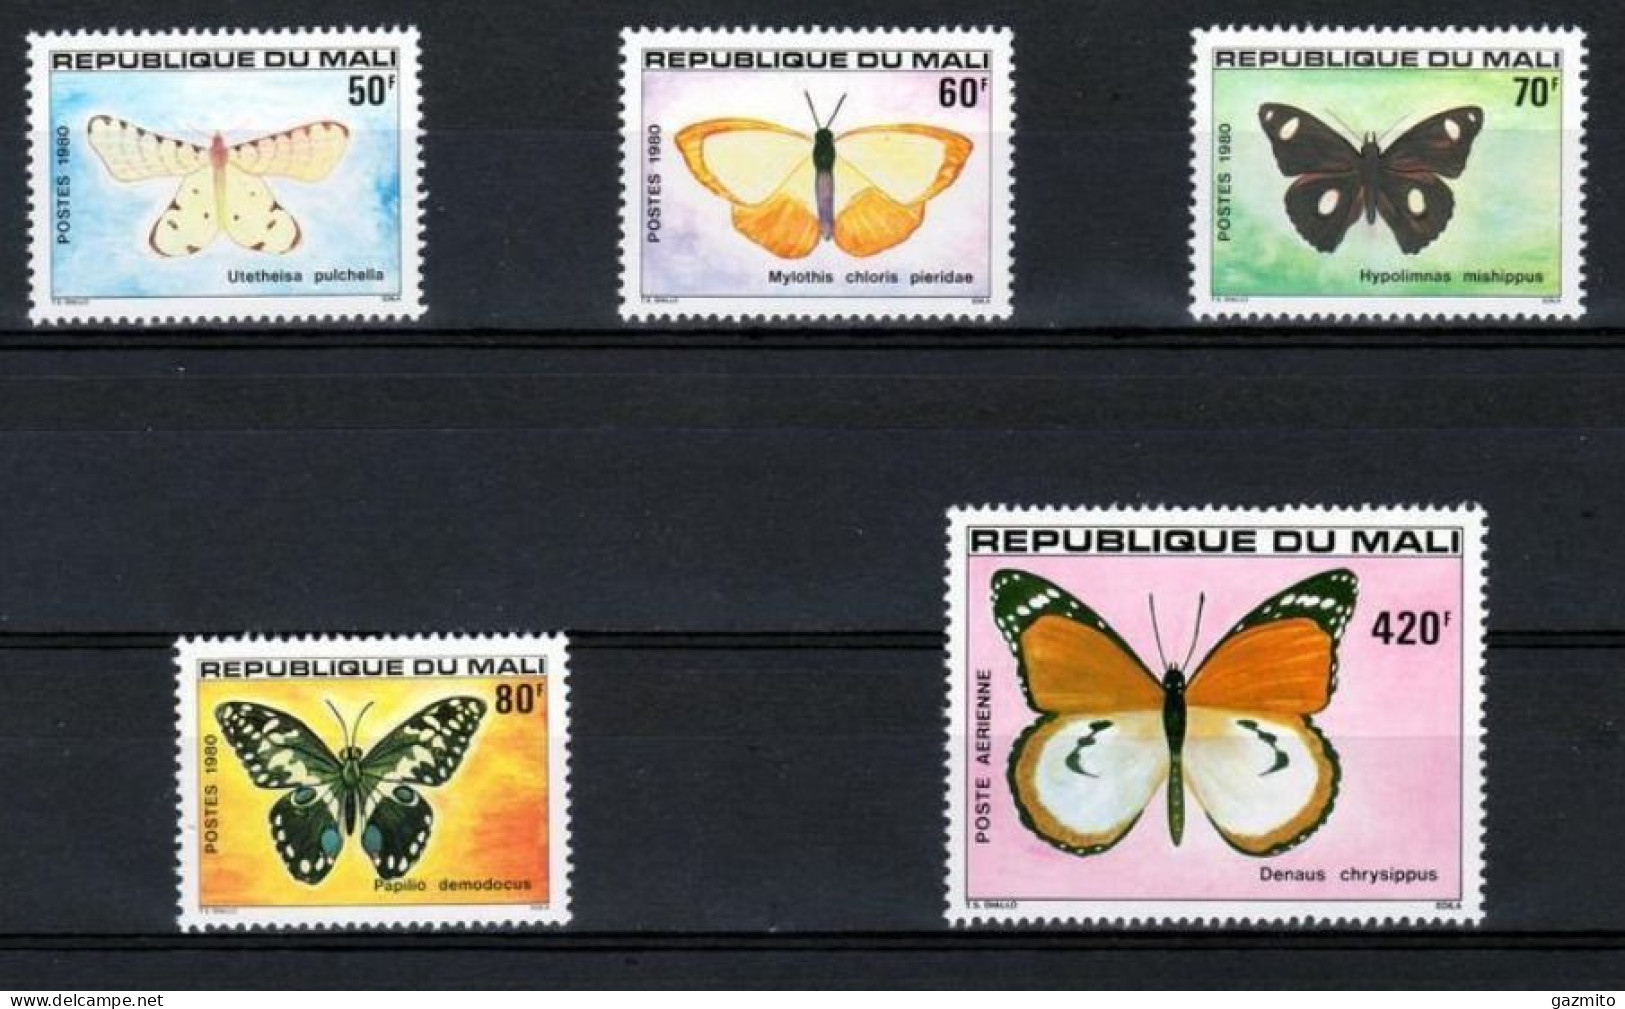 Mali 1980, Butterflies, 5val - Vlinders